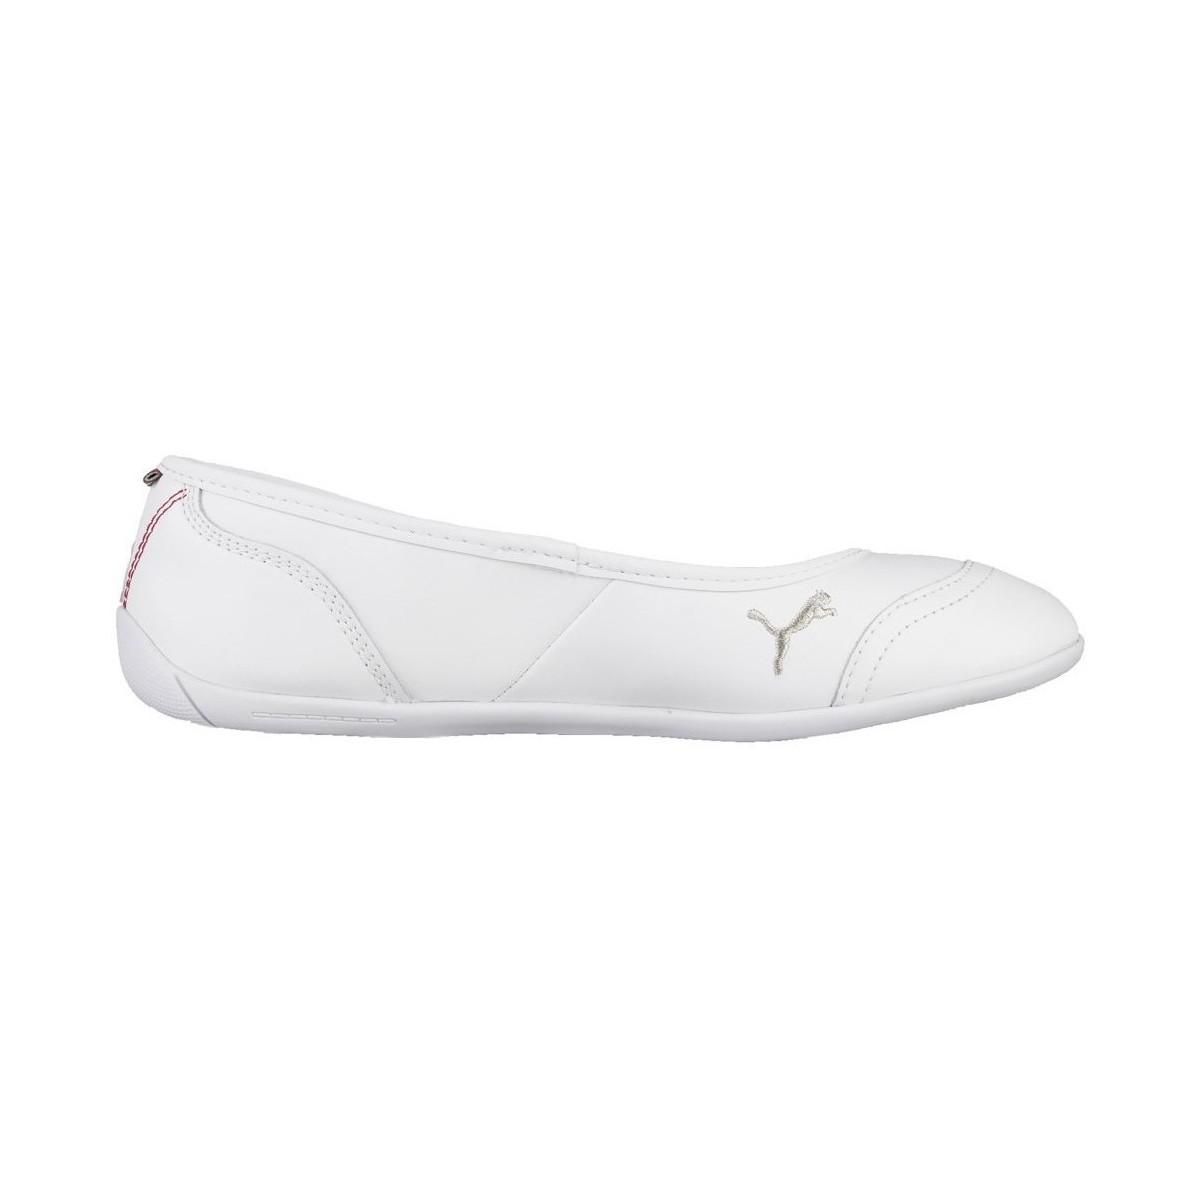 ballerina puma shoes low cost f24a3 76223